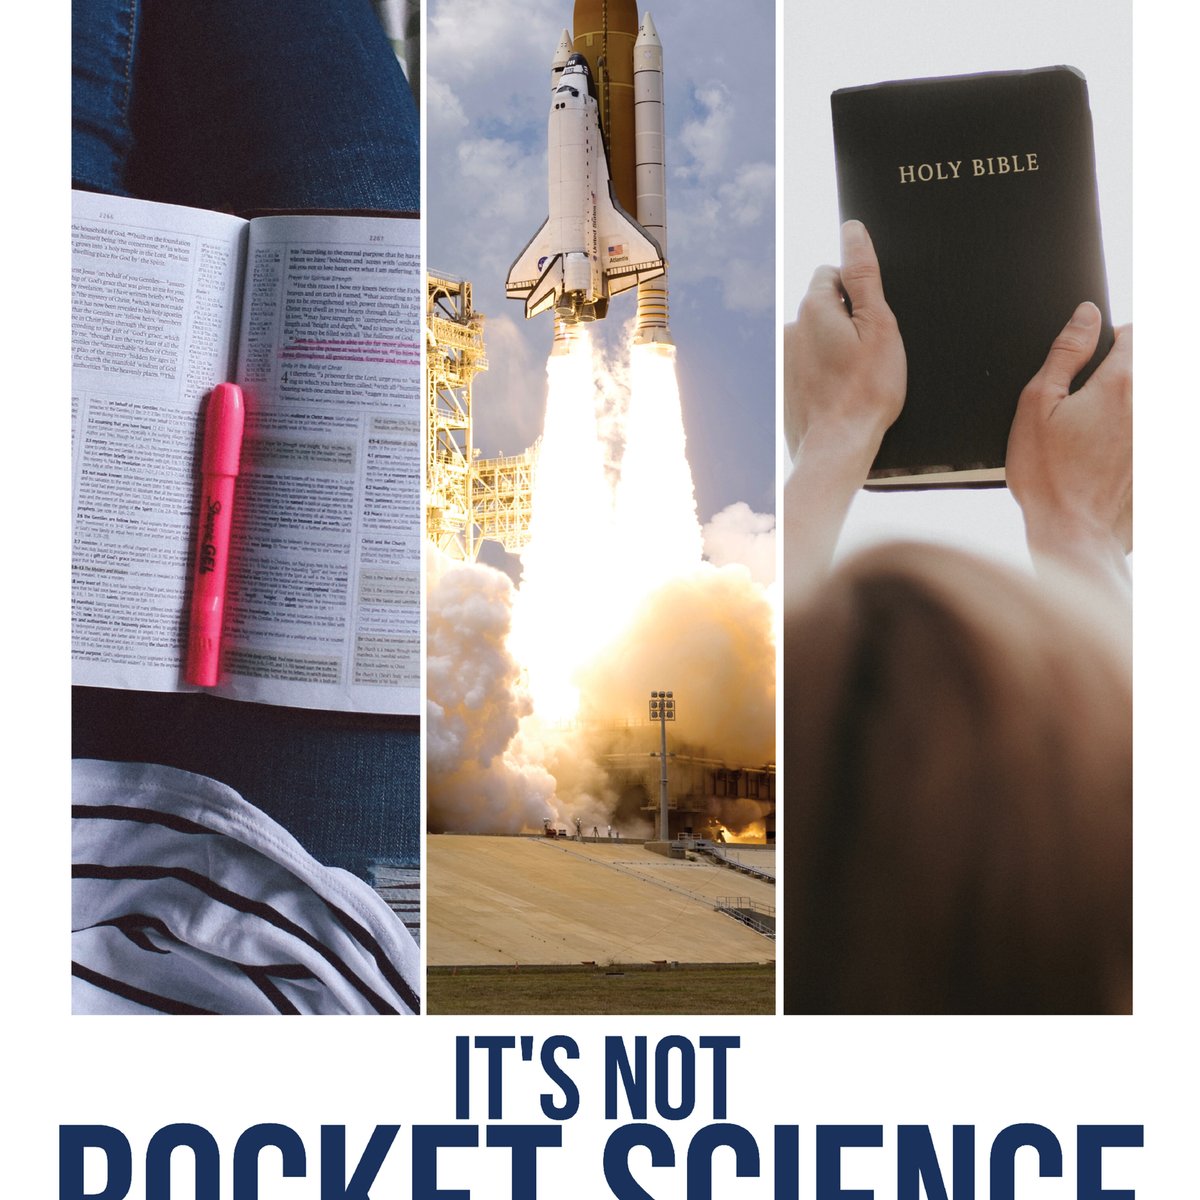 SCOTTeVEST: It's not Rocket Science. It's Pocket Science!